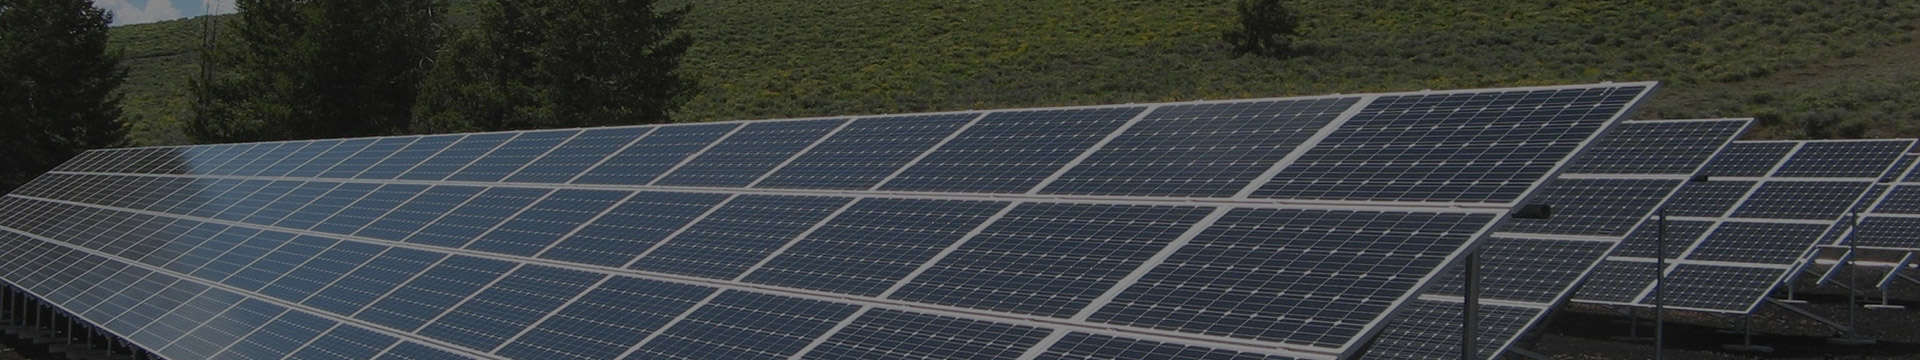 400-415 Watt Solar Panel